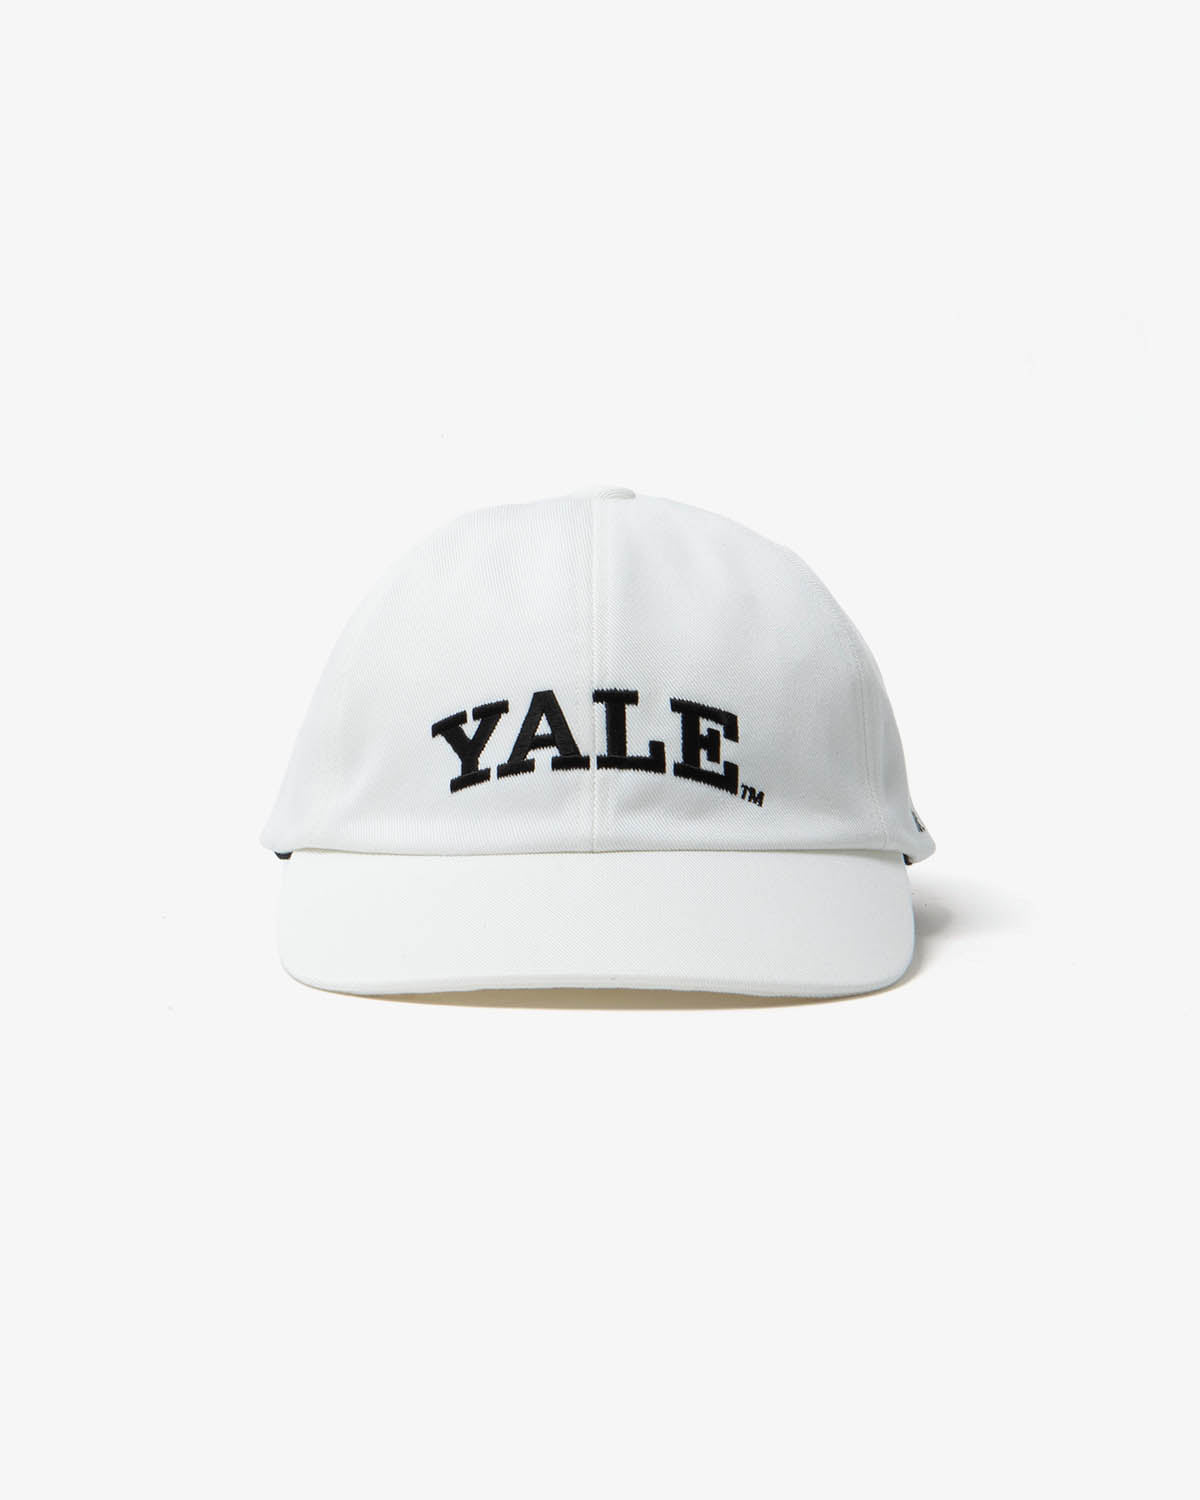 YALE CAP (WOMEN'S)